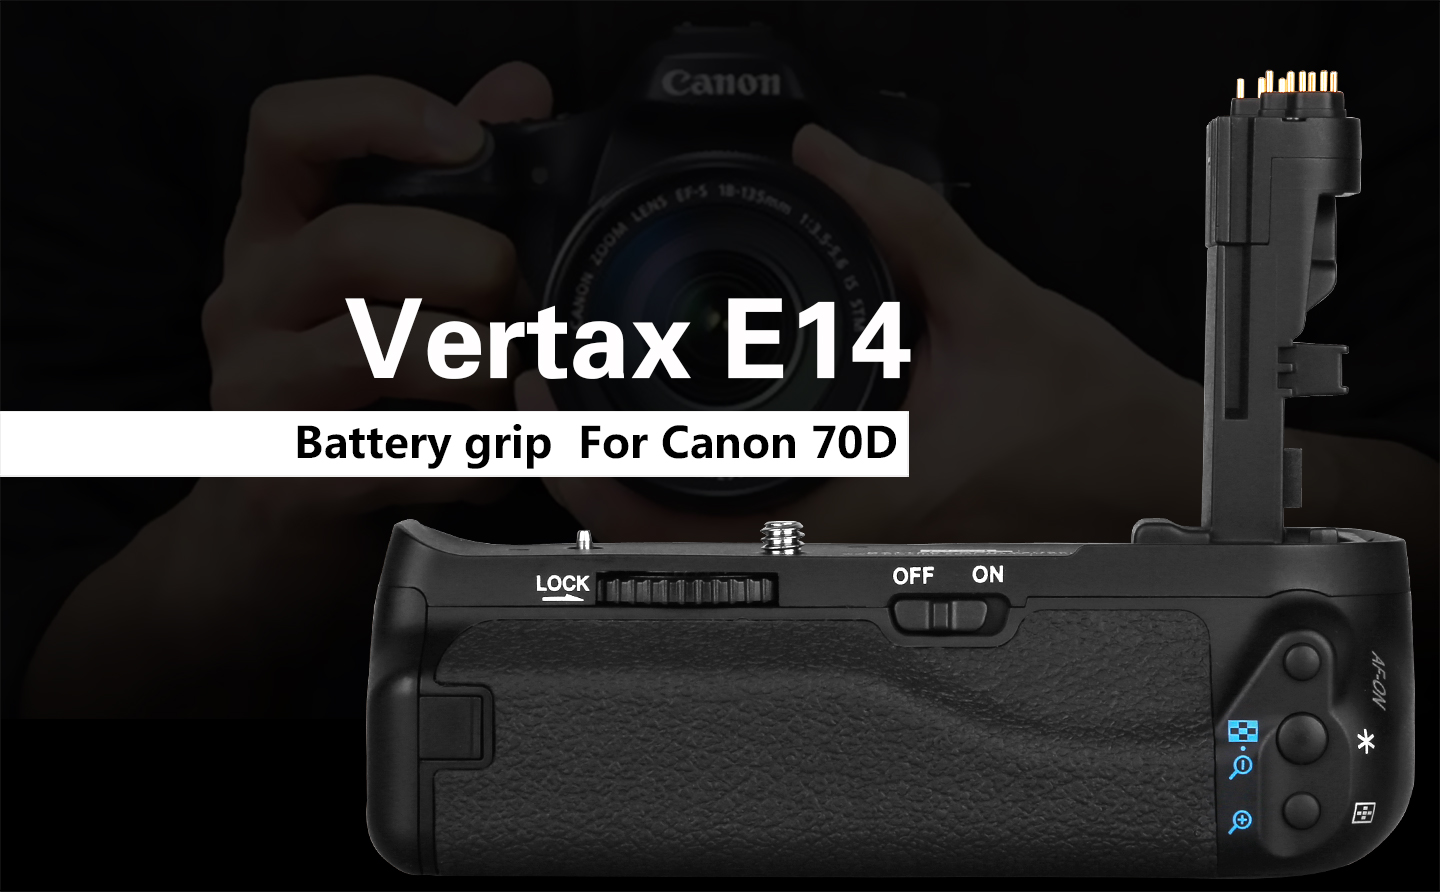 Vertax E14 Battery grip For Canon 70D